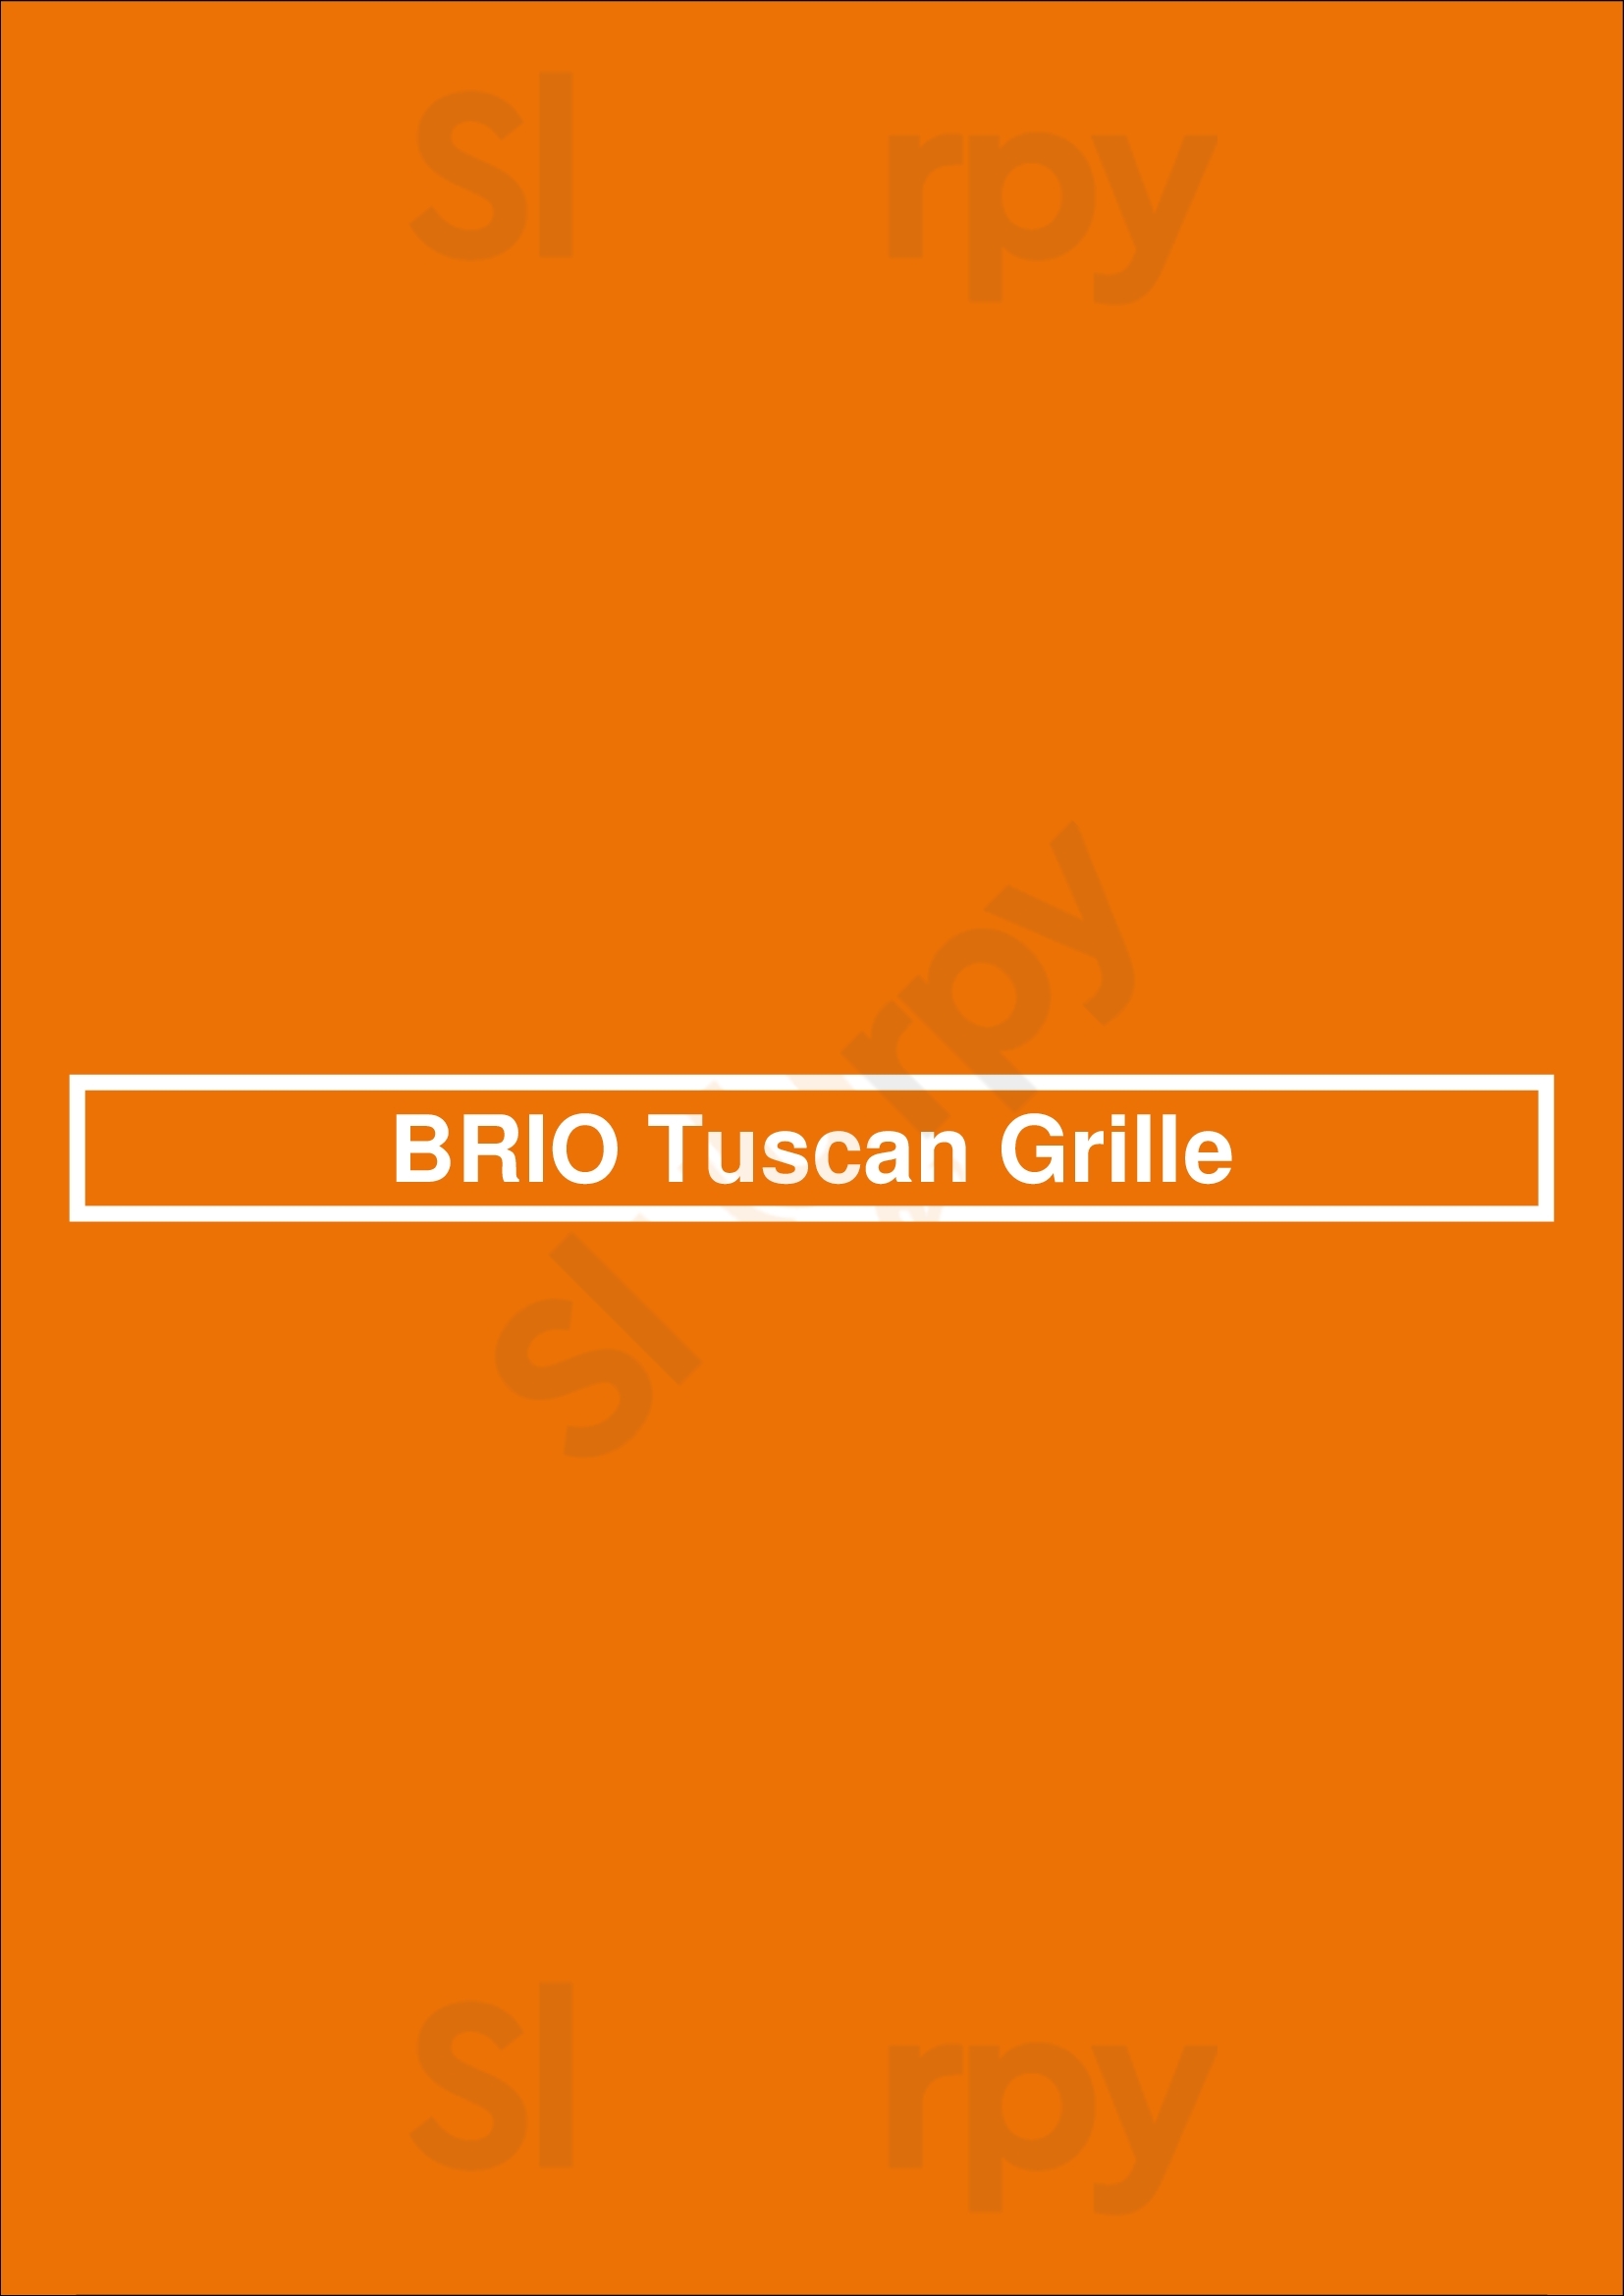 Brio Italian Grille Columbus Menu - 1